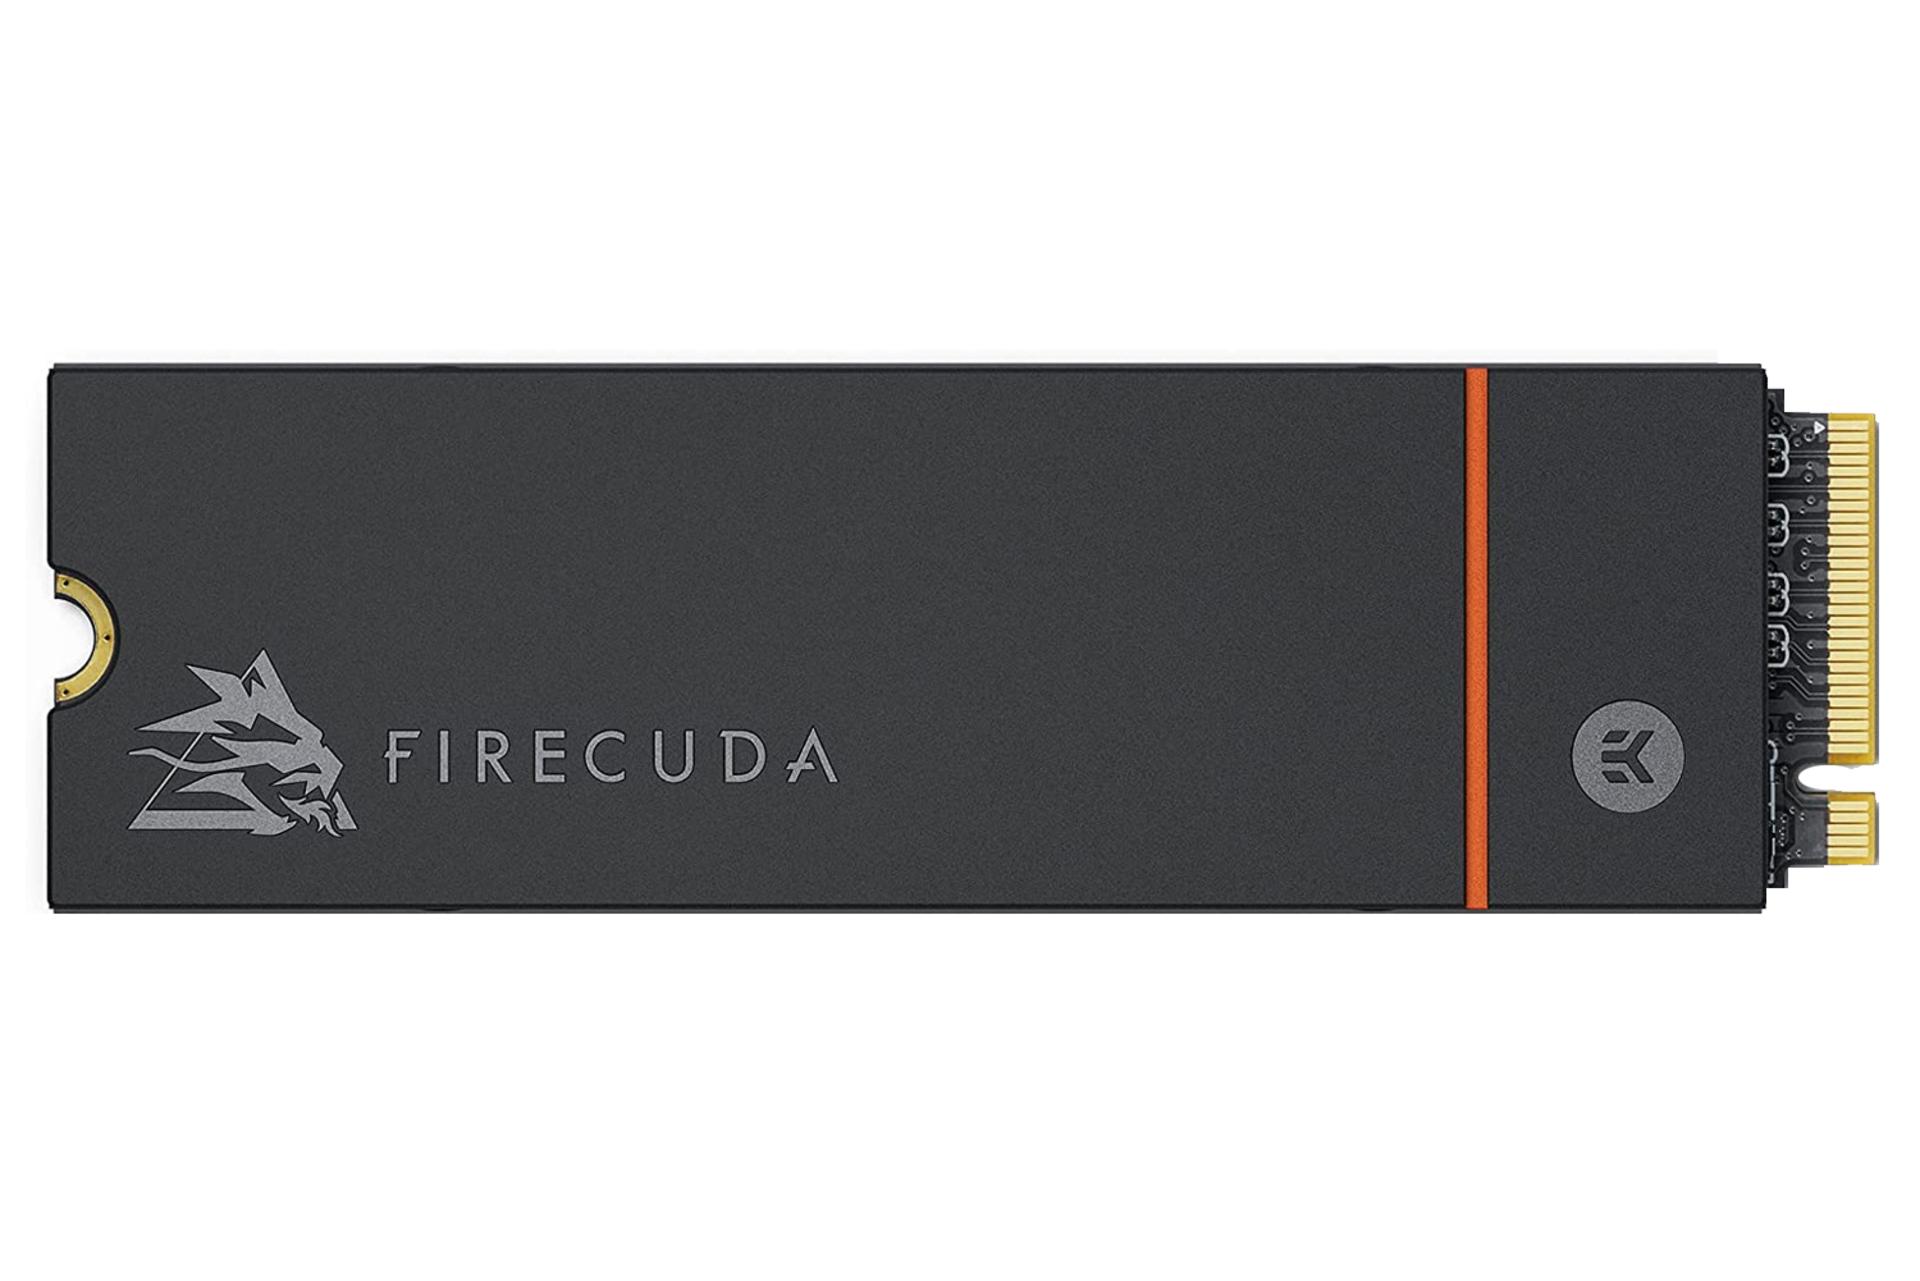 SSD سیگیت FireCuda 530 Heatsink ظرفیت 1 ترابایت